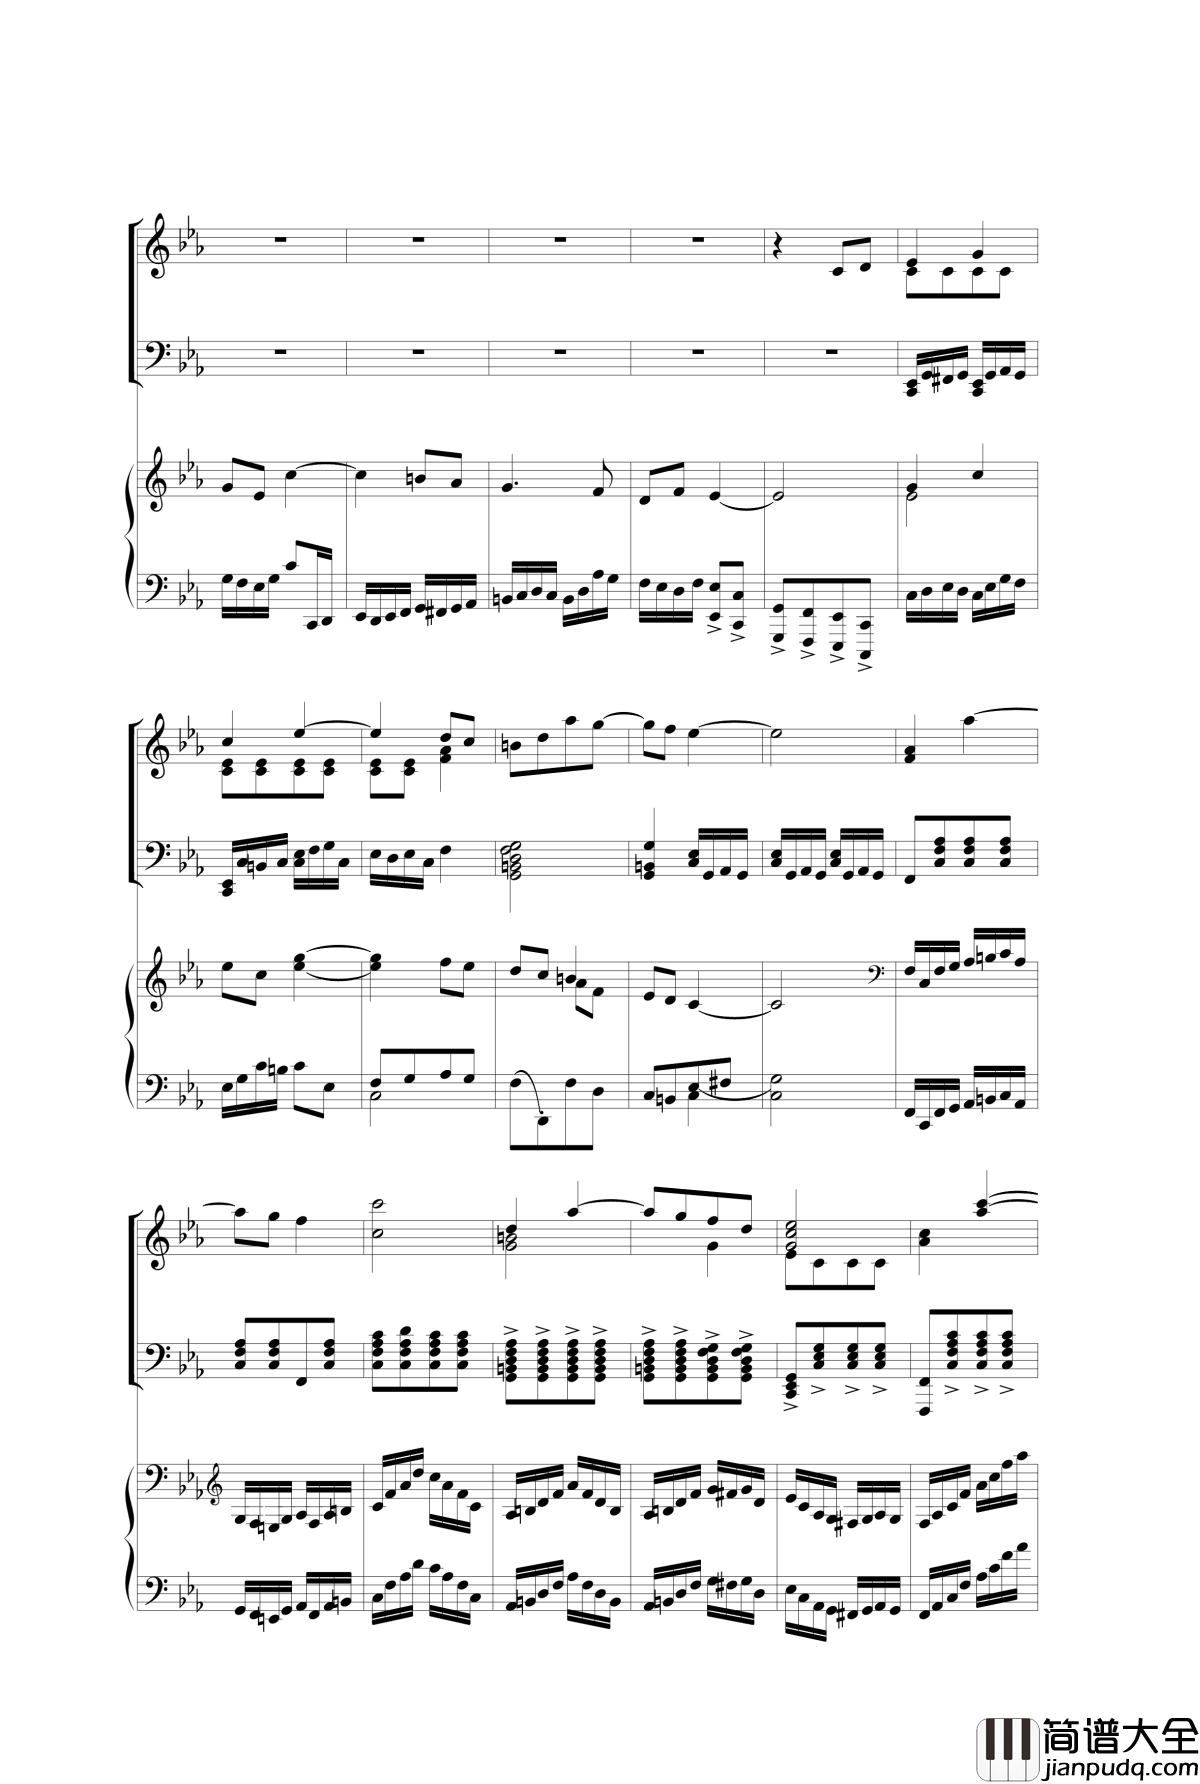 Piano_Concerto_I钢琴谱_3.mov_nzh1934